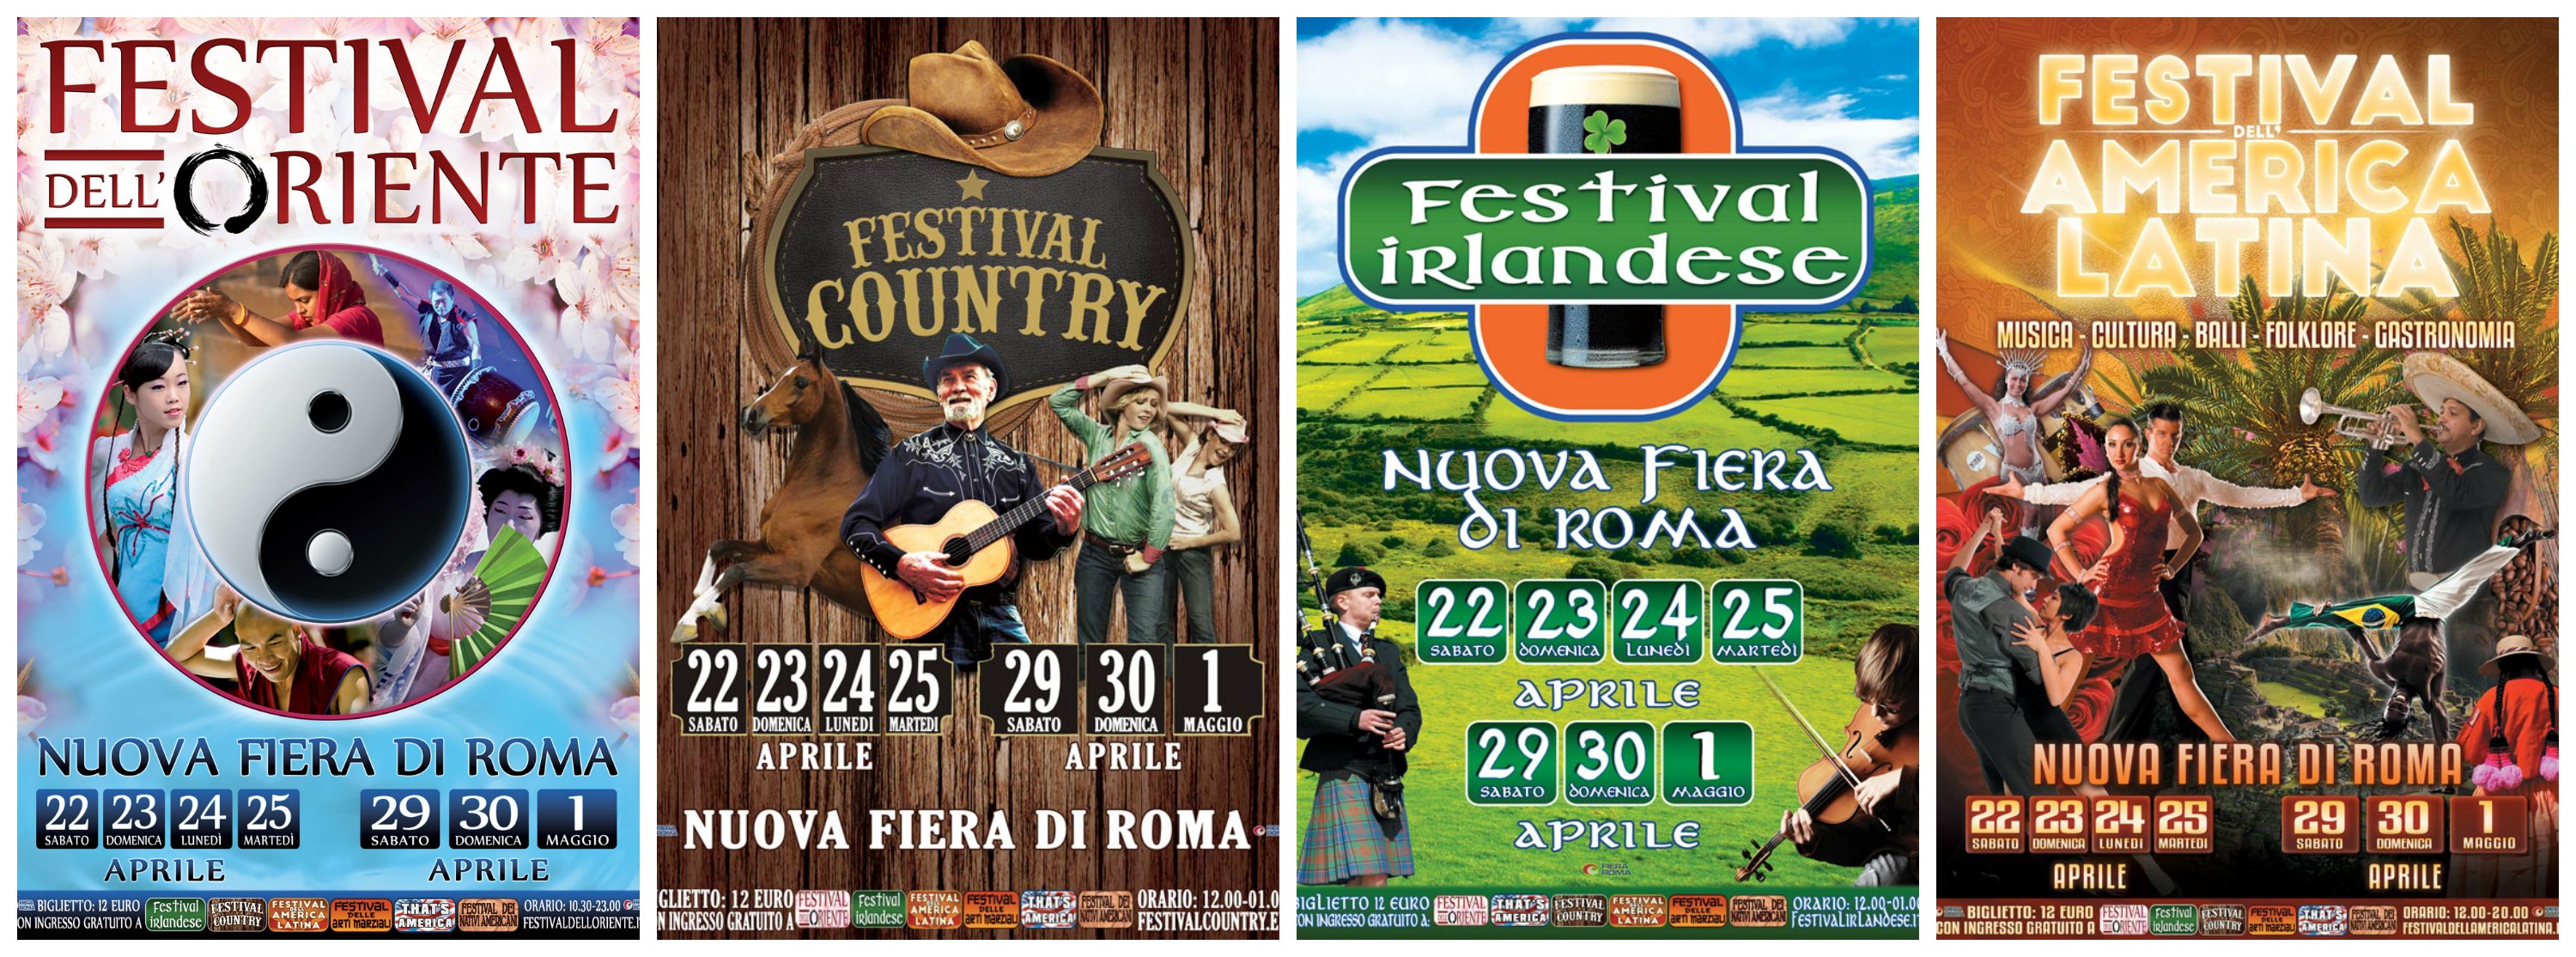 Festival dell’Oriente + Festival irlandese + Festival America latina + Festival Country